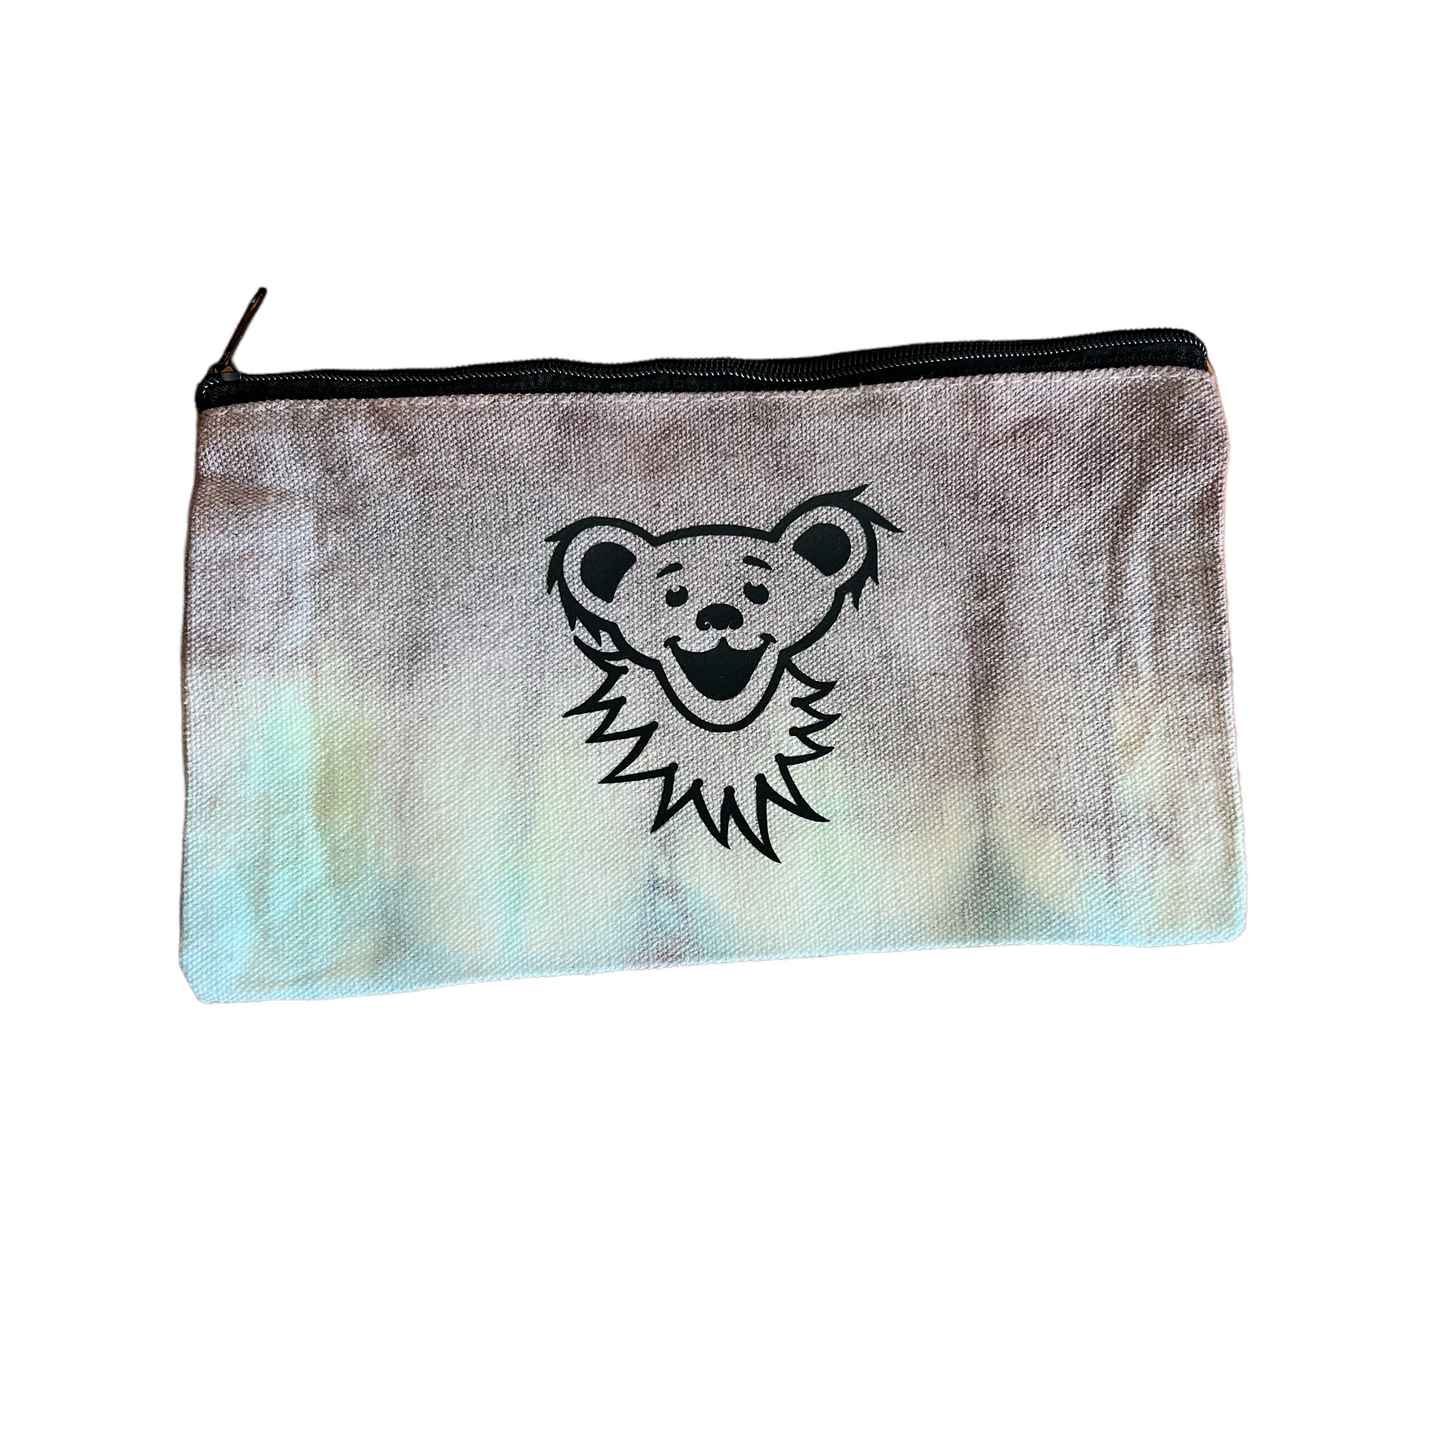 Bear zipper pouch